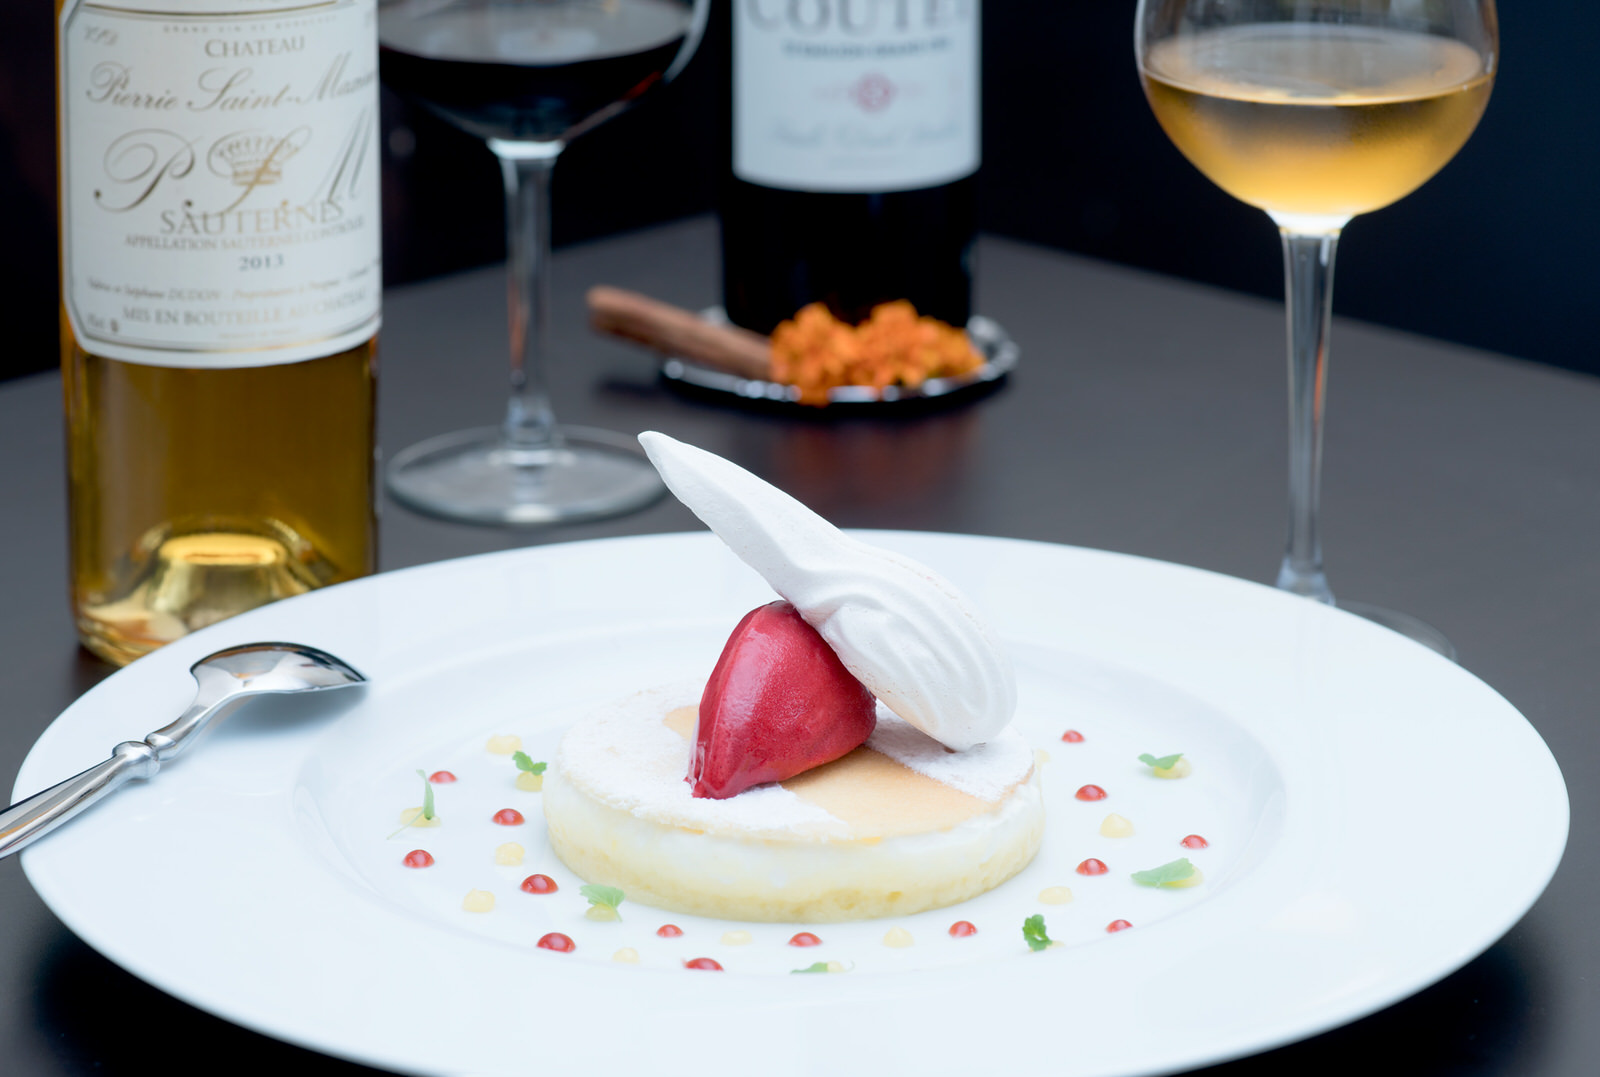 Dessert - Restaurant - vin - photo culinaire - Thierry Pousset - photographe culinaire - Bordeaux